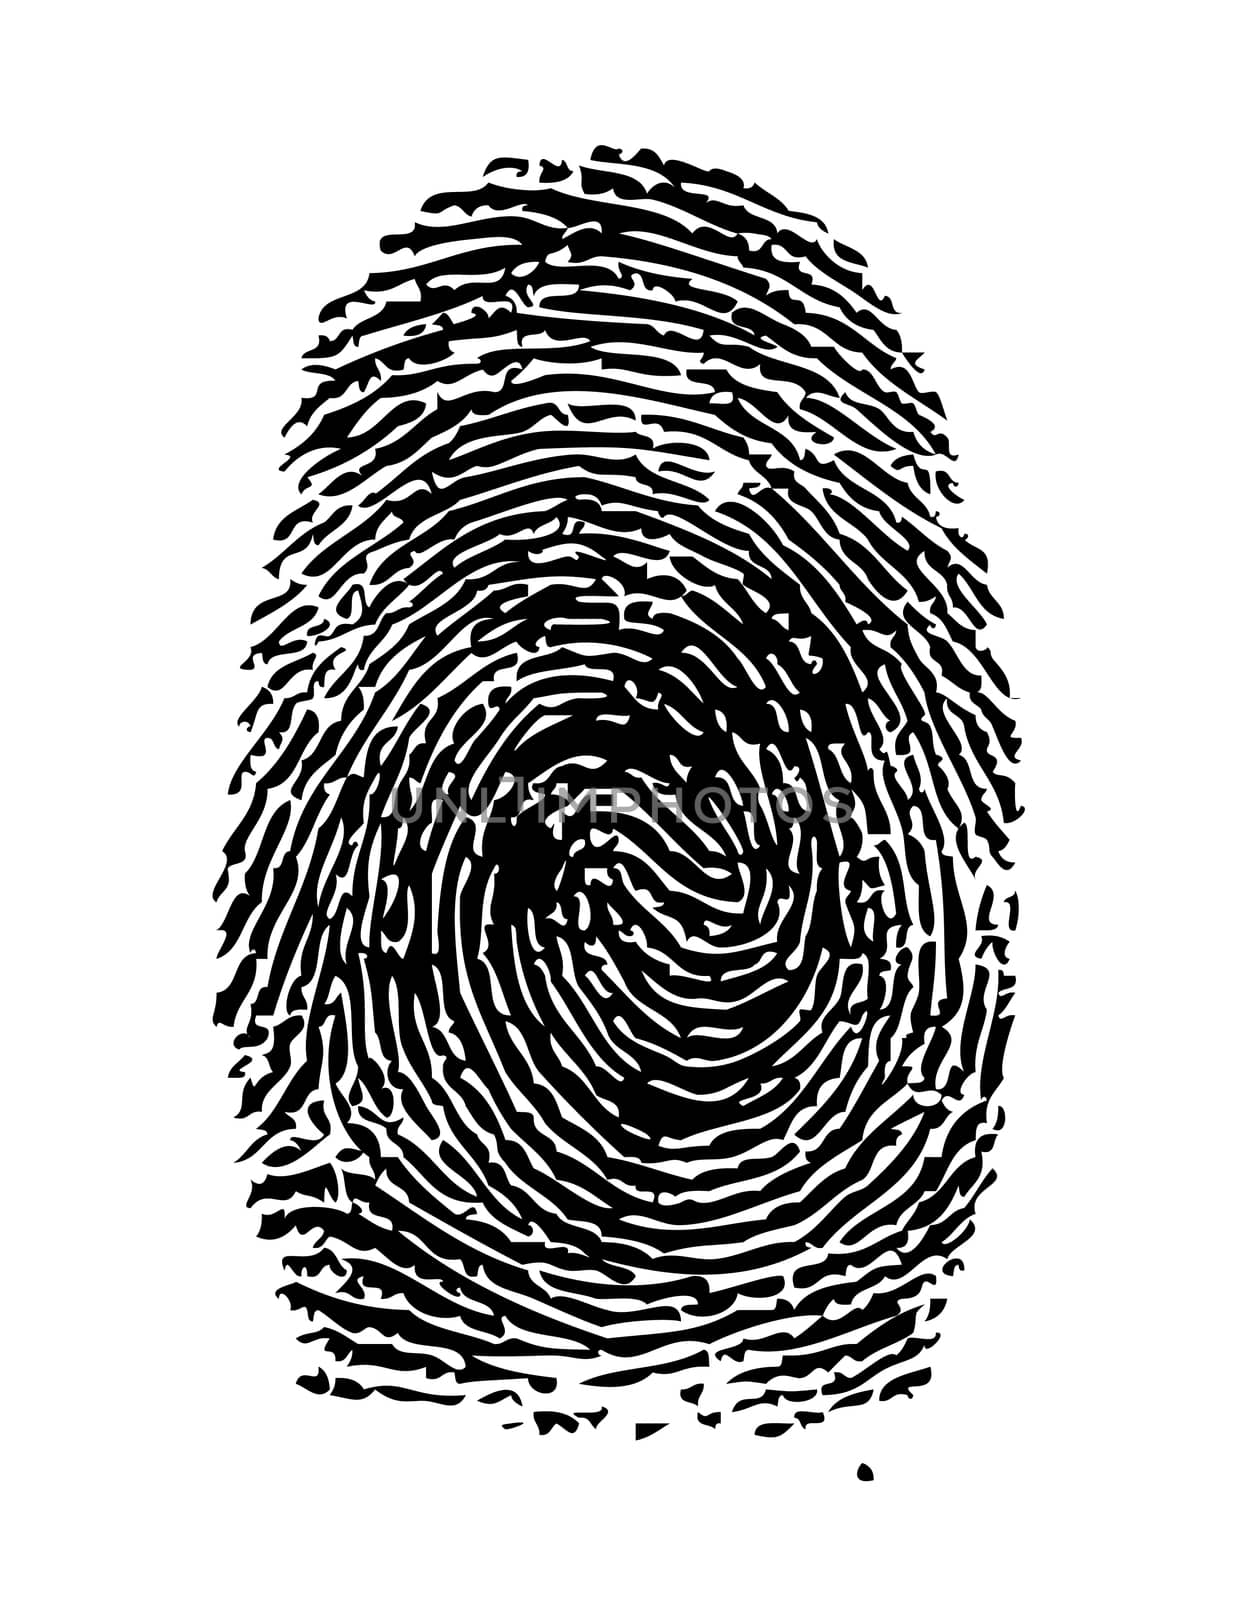 Highly detailed illustration of a fingerprint